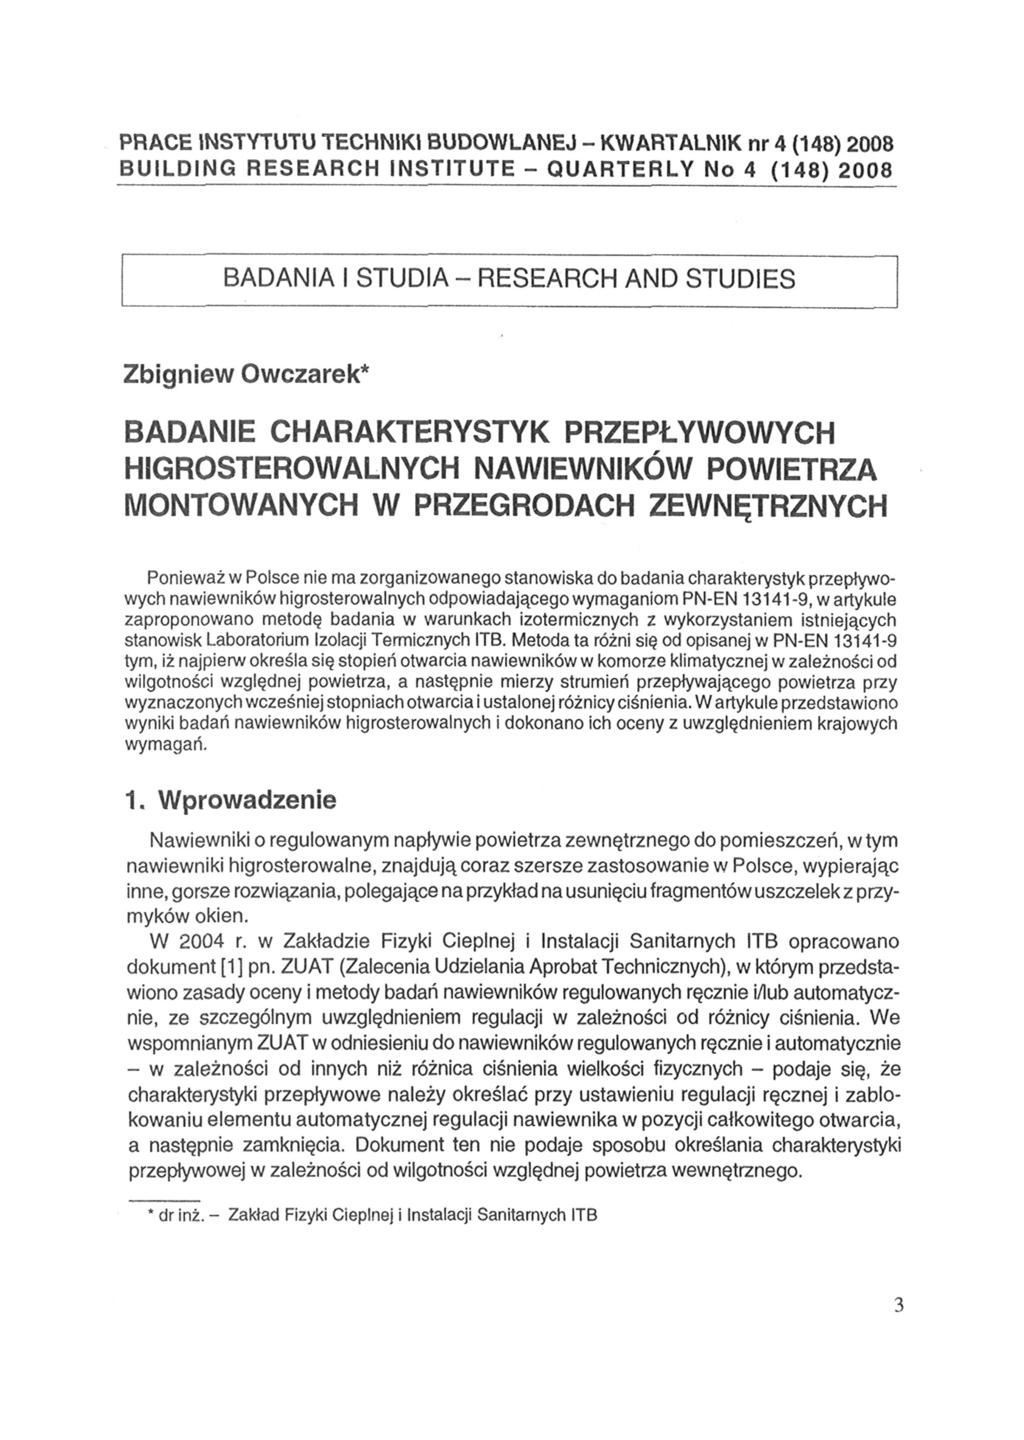 PRACE INSTYTUTU TECHNIKI BUDOWLANEJ - KWARTALNIK nr 4 (148) 2008 BUILDING RESEARCH INSTITUTE - QUARTERLY No 4 (148) 2008 BADANIA I STUDIA - RESEARCH AND STUDIES Zbigniew Owczarek* BADANIE